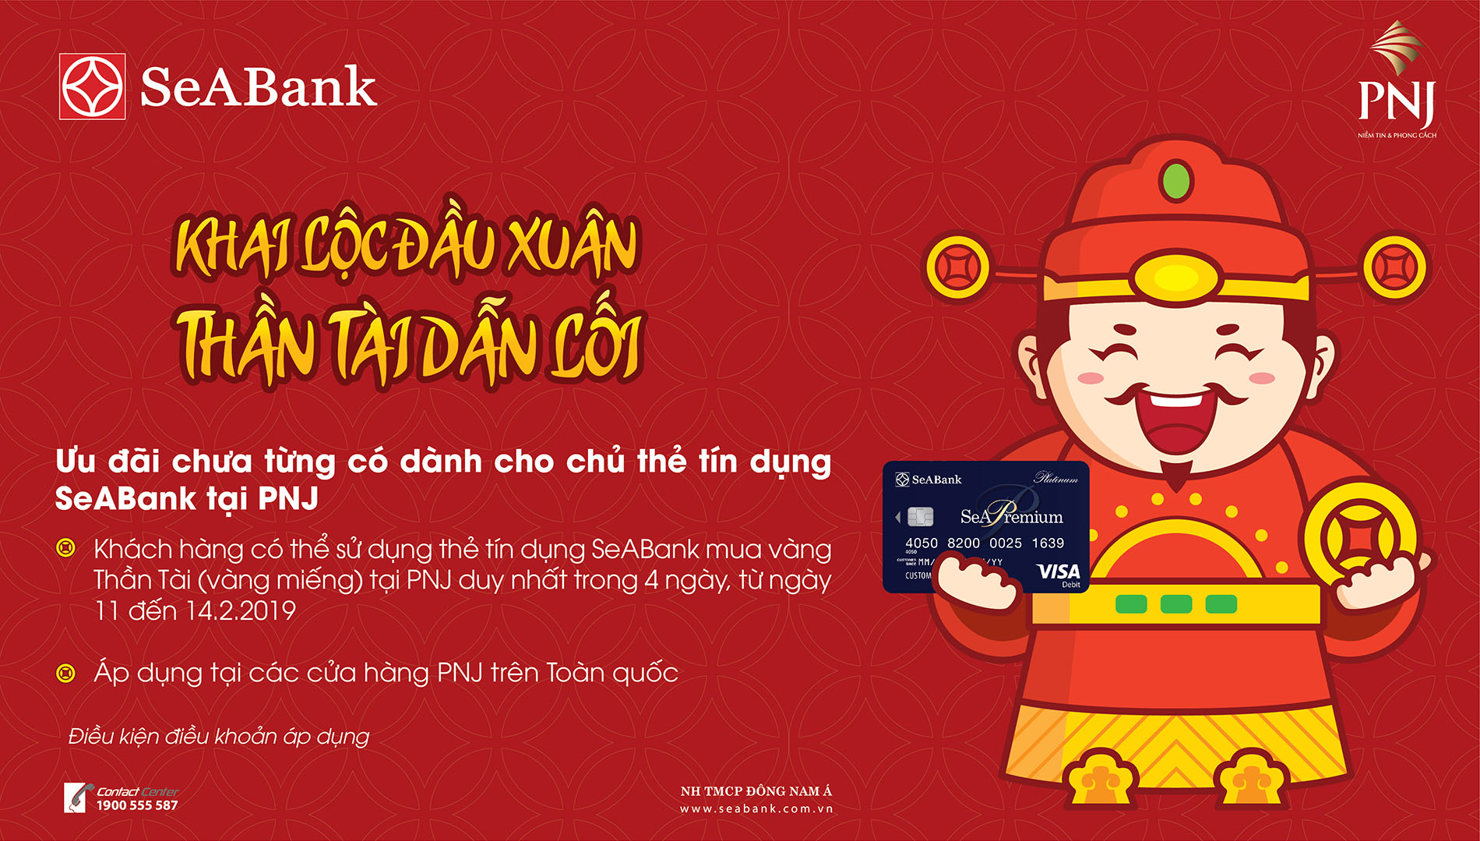 Khách hàng có thể sử dụng thẻ tín dụng SeABank mua vàng Thần Tài (vàng miếng) tại PNJ trong 4 ngày, từ ngày 11 đến 14/2/2019.